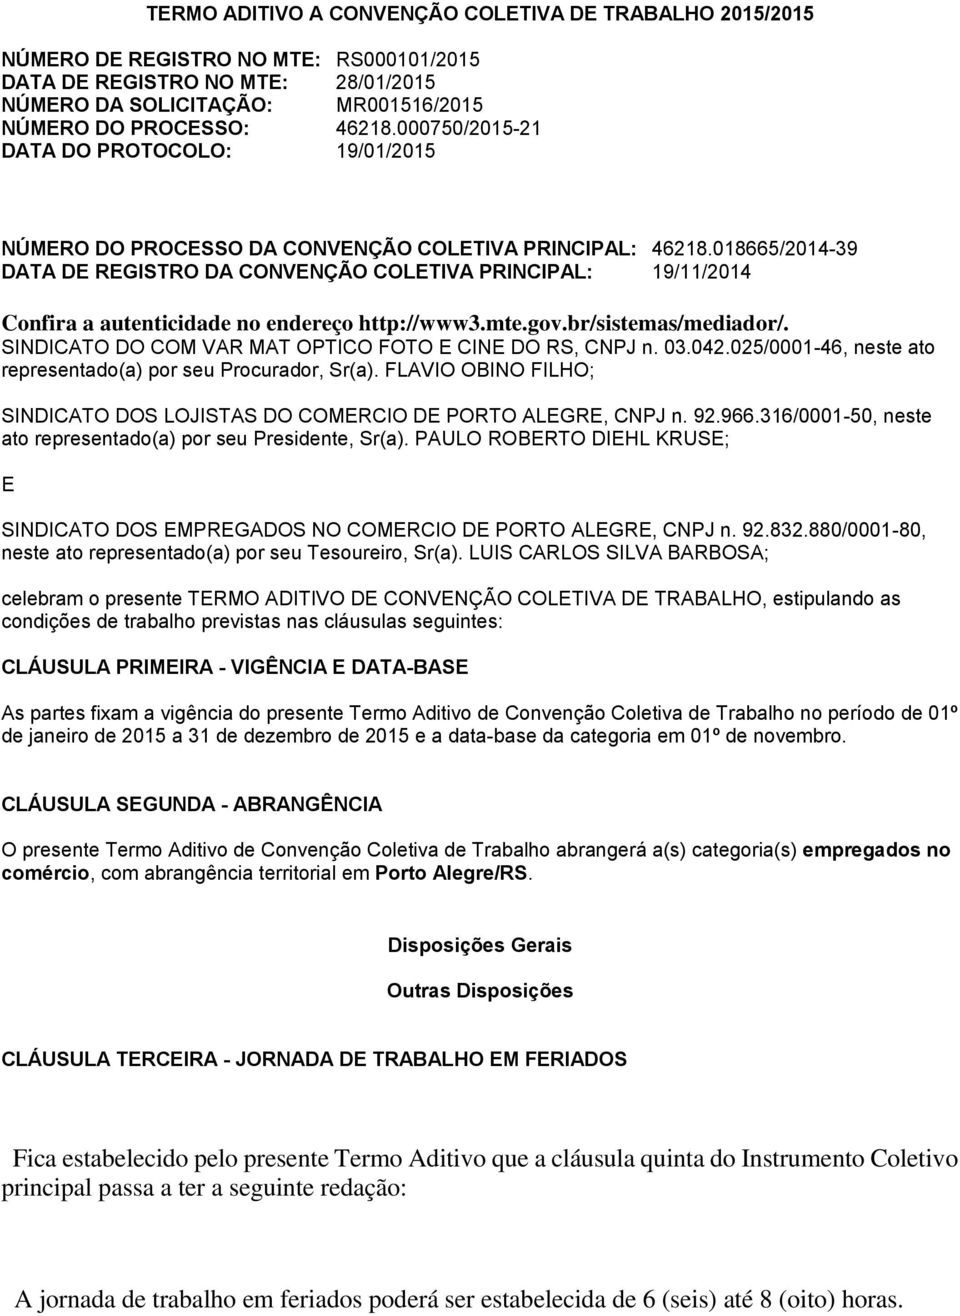 018665/2014-39 DATA DE REGISTRO DA CONVENÇÃO COLETIVA PRINCIPAL: 19/11/2014 Confira a autenticidade no endereço http://www3.mte.gov.br/sistemas/mediador/.